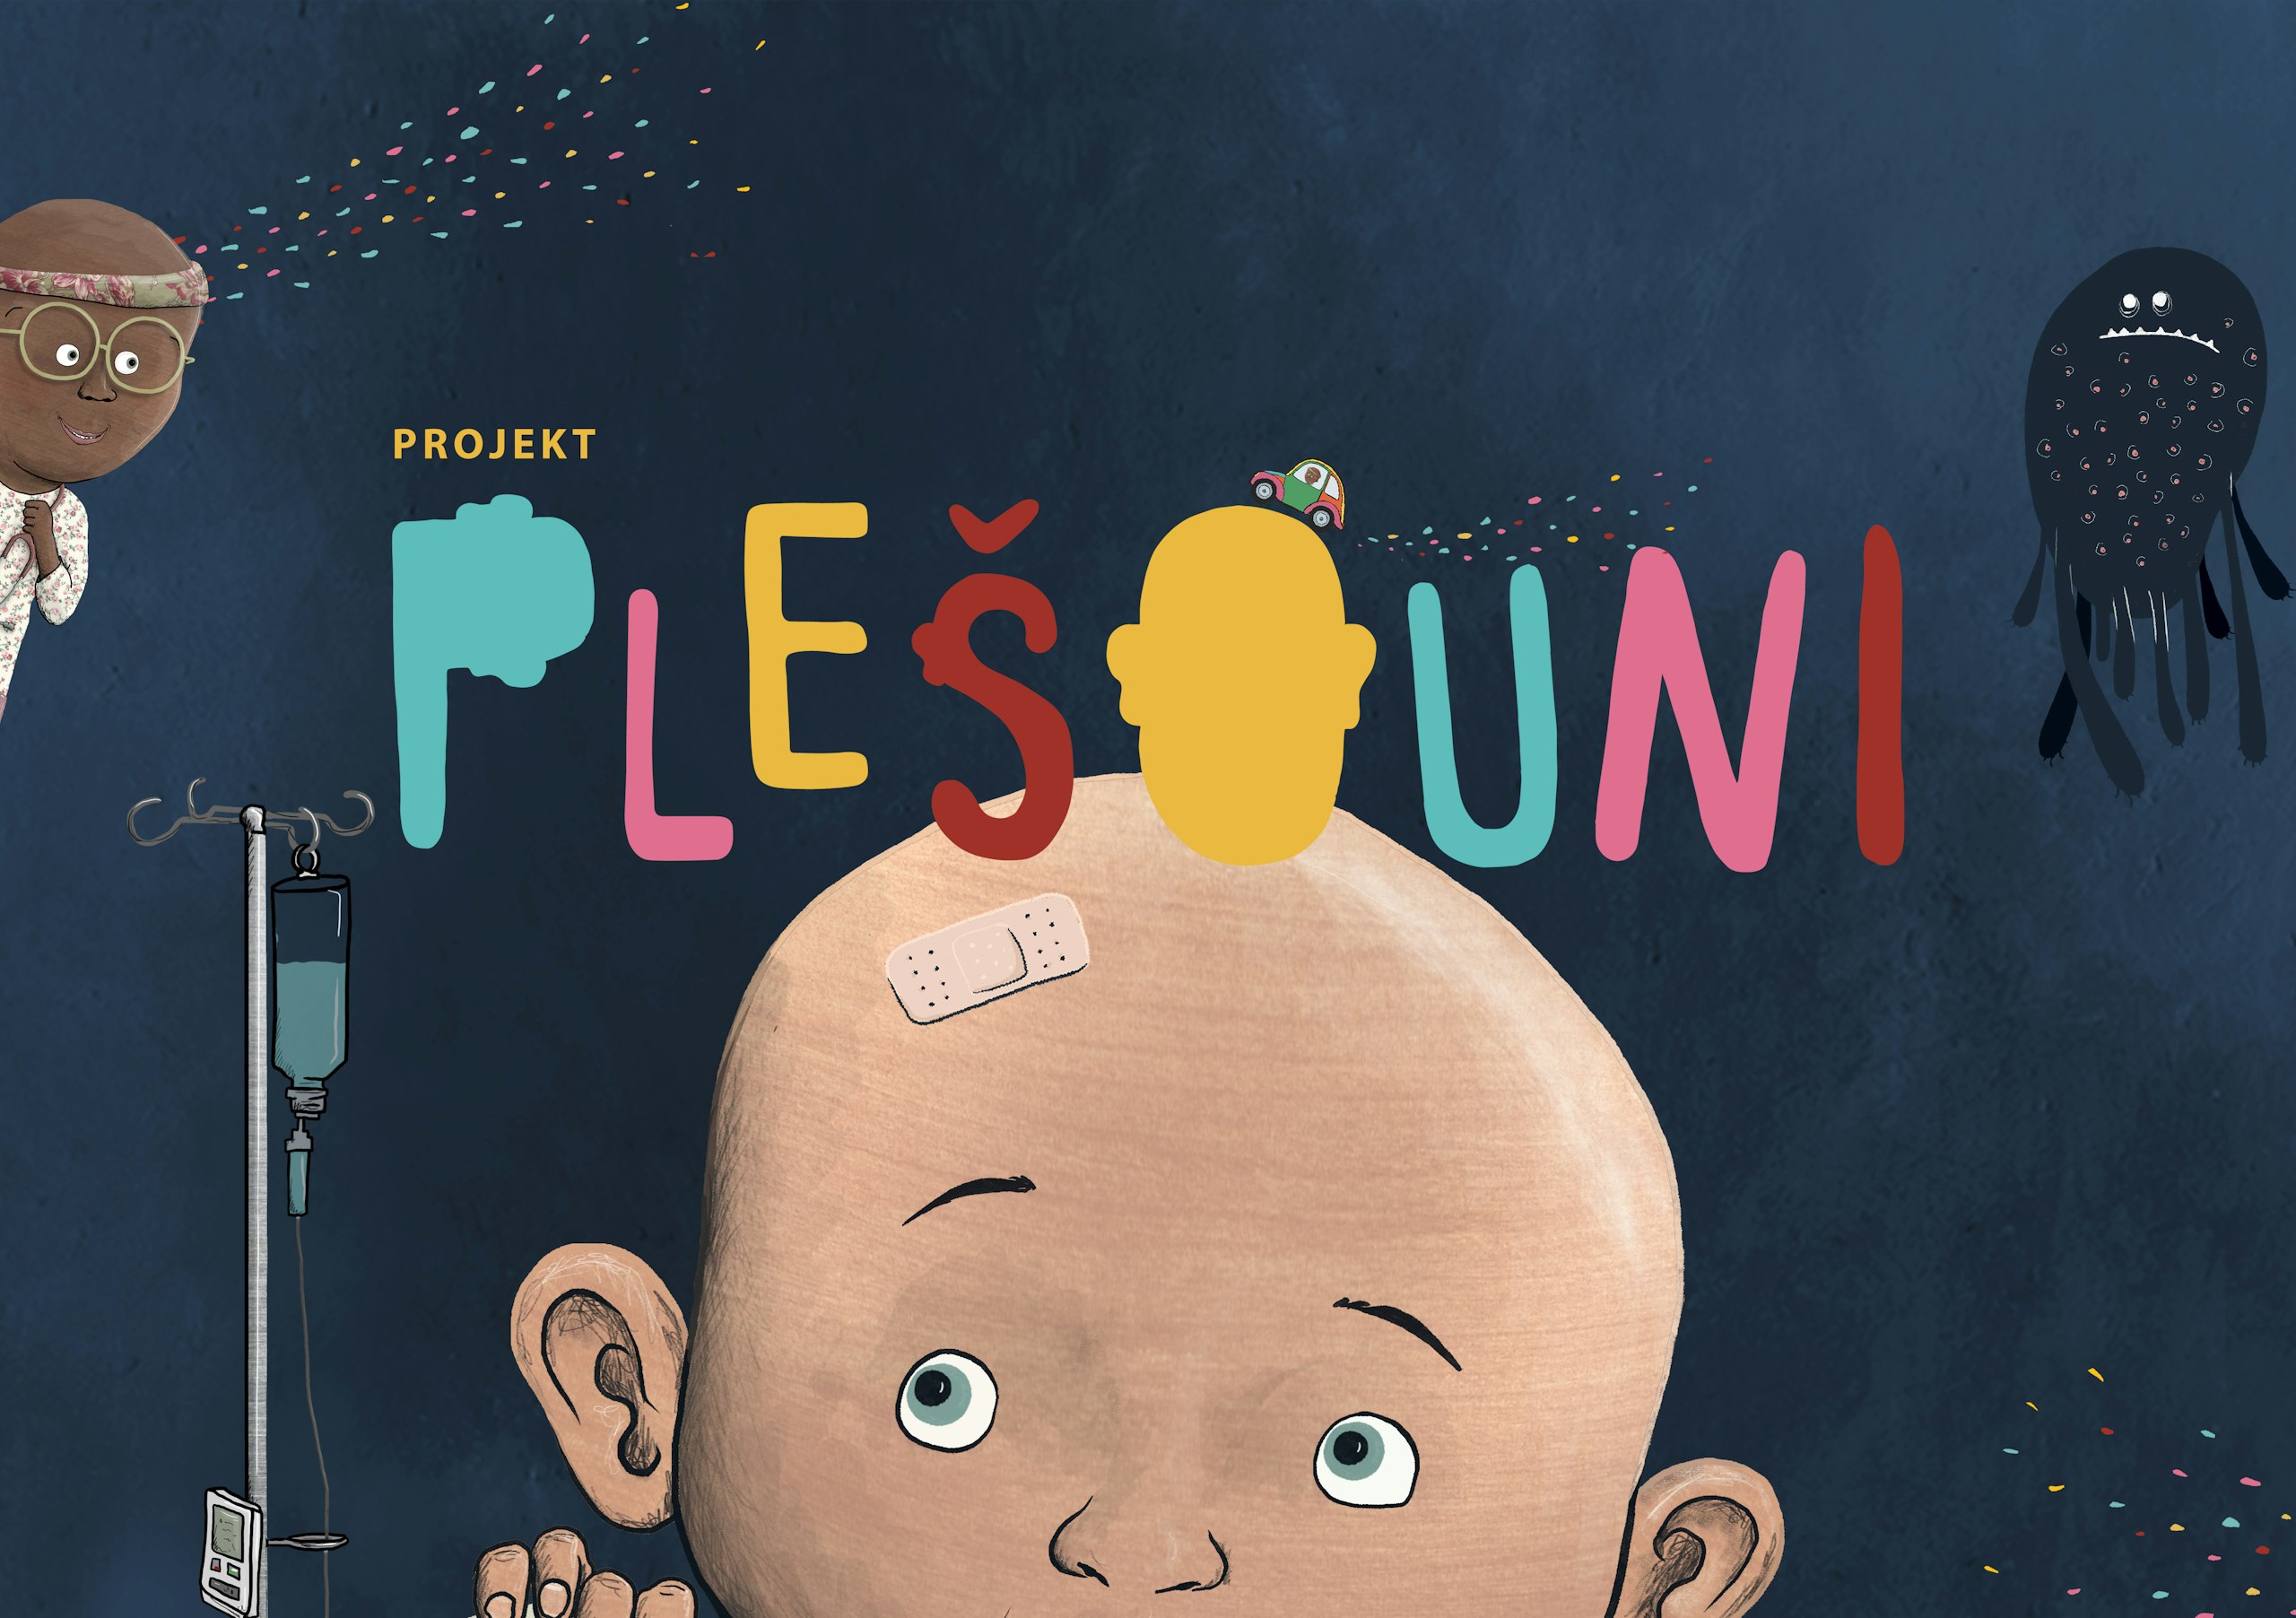 Plešouni – seriál a aplikace pro onkologicky nemocné děti